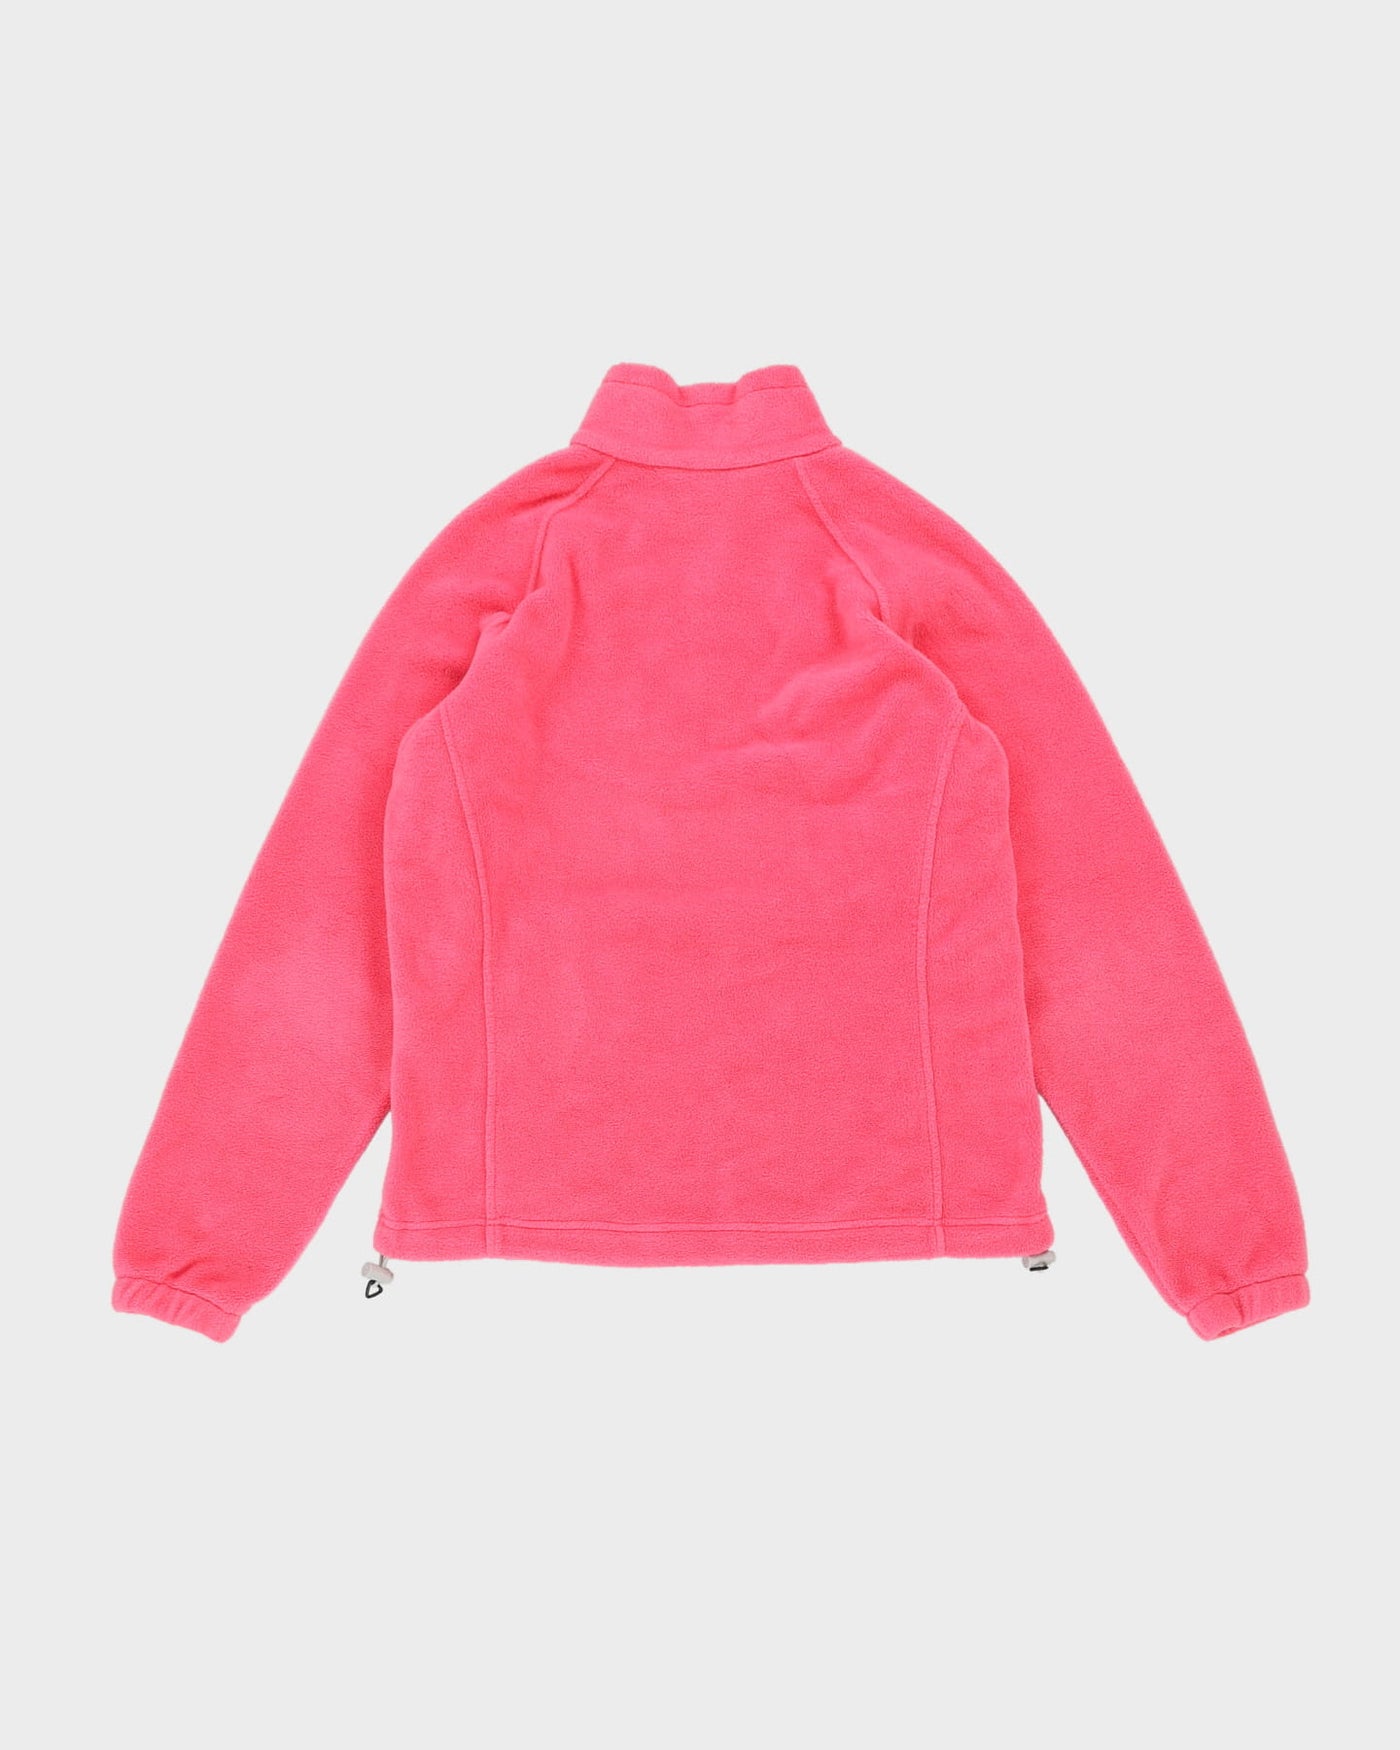 Columbia Pink Full-Zip Fleece - M